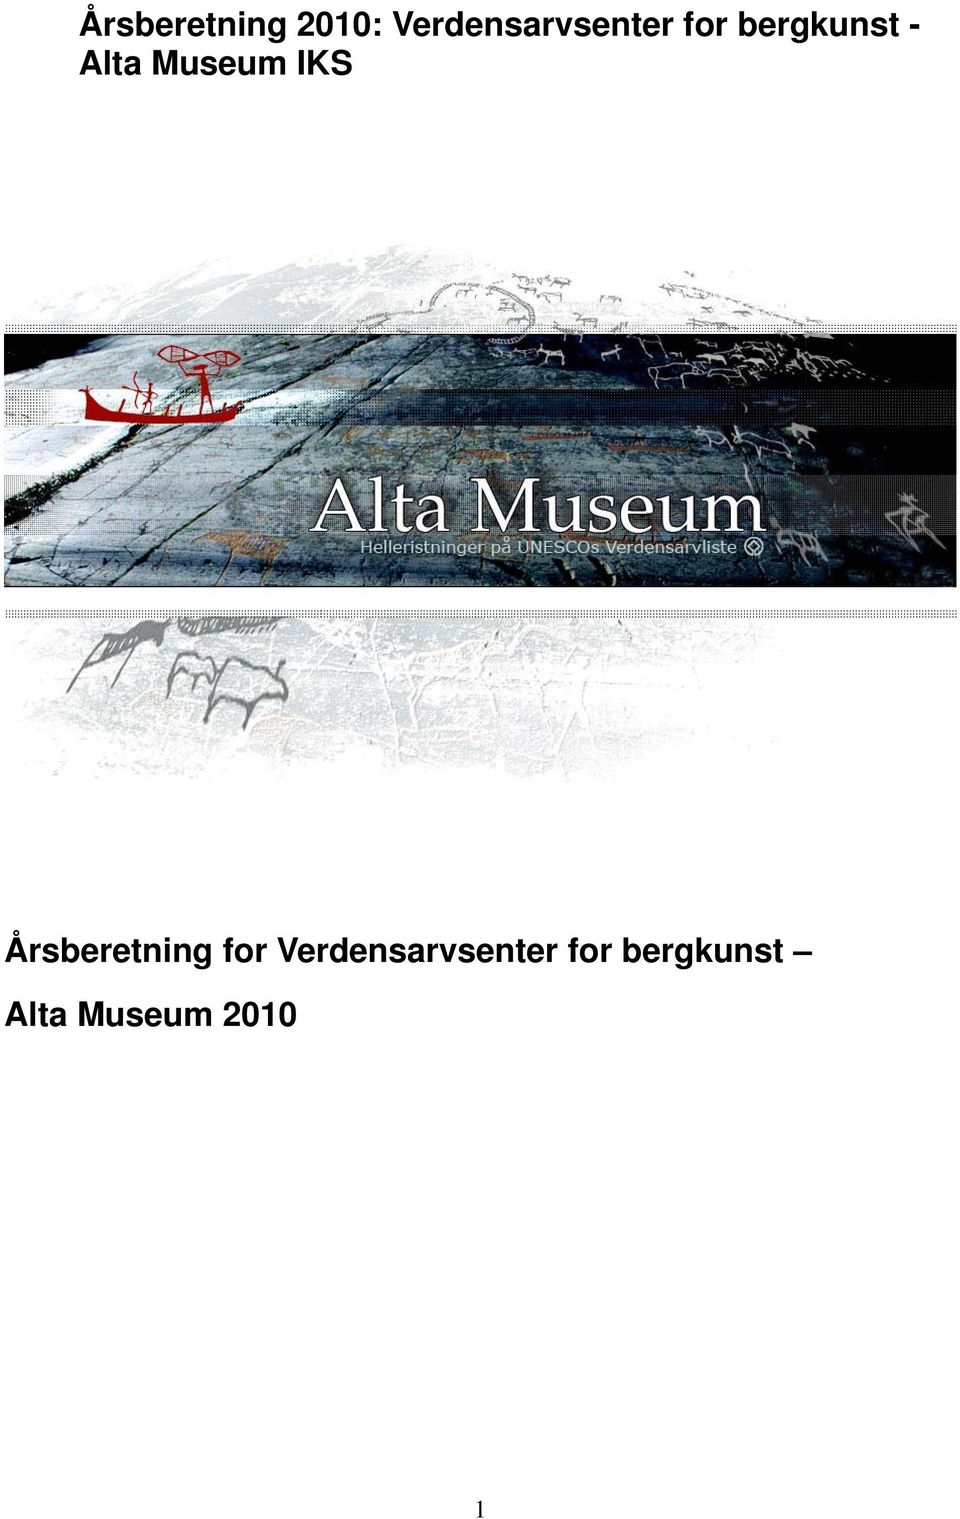 Alta Museum IKS Årsberetning for